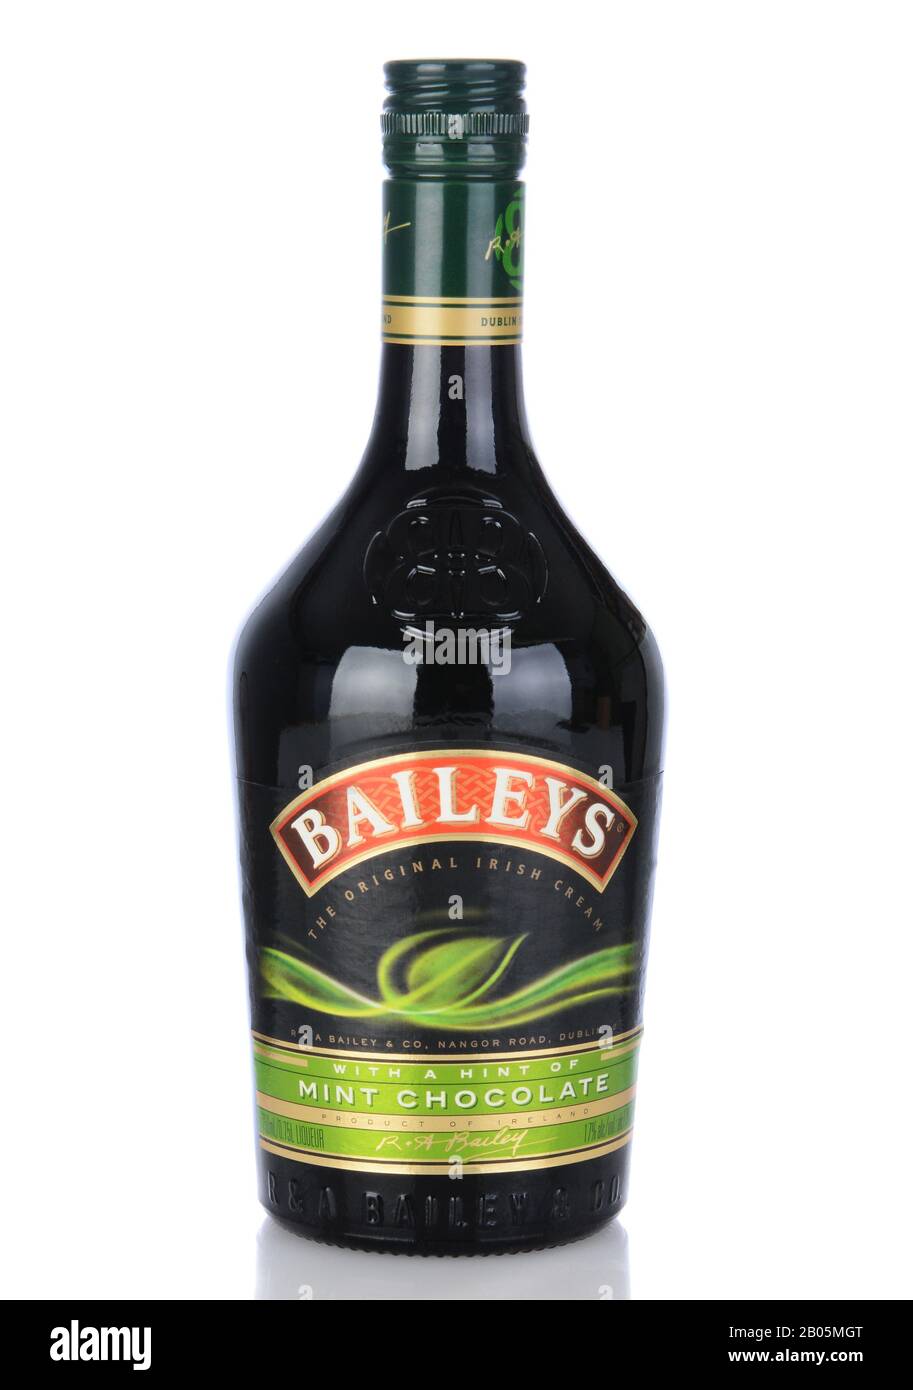 Irvine, CA - 11 gennaio 2013: Una bottiglia di cioccolato Baileys menta cioccolato irlandese Liqueur. Baileys, introdotto nel 1974, fu la prima Crema irlandese ad essere br Foto Stock